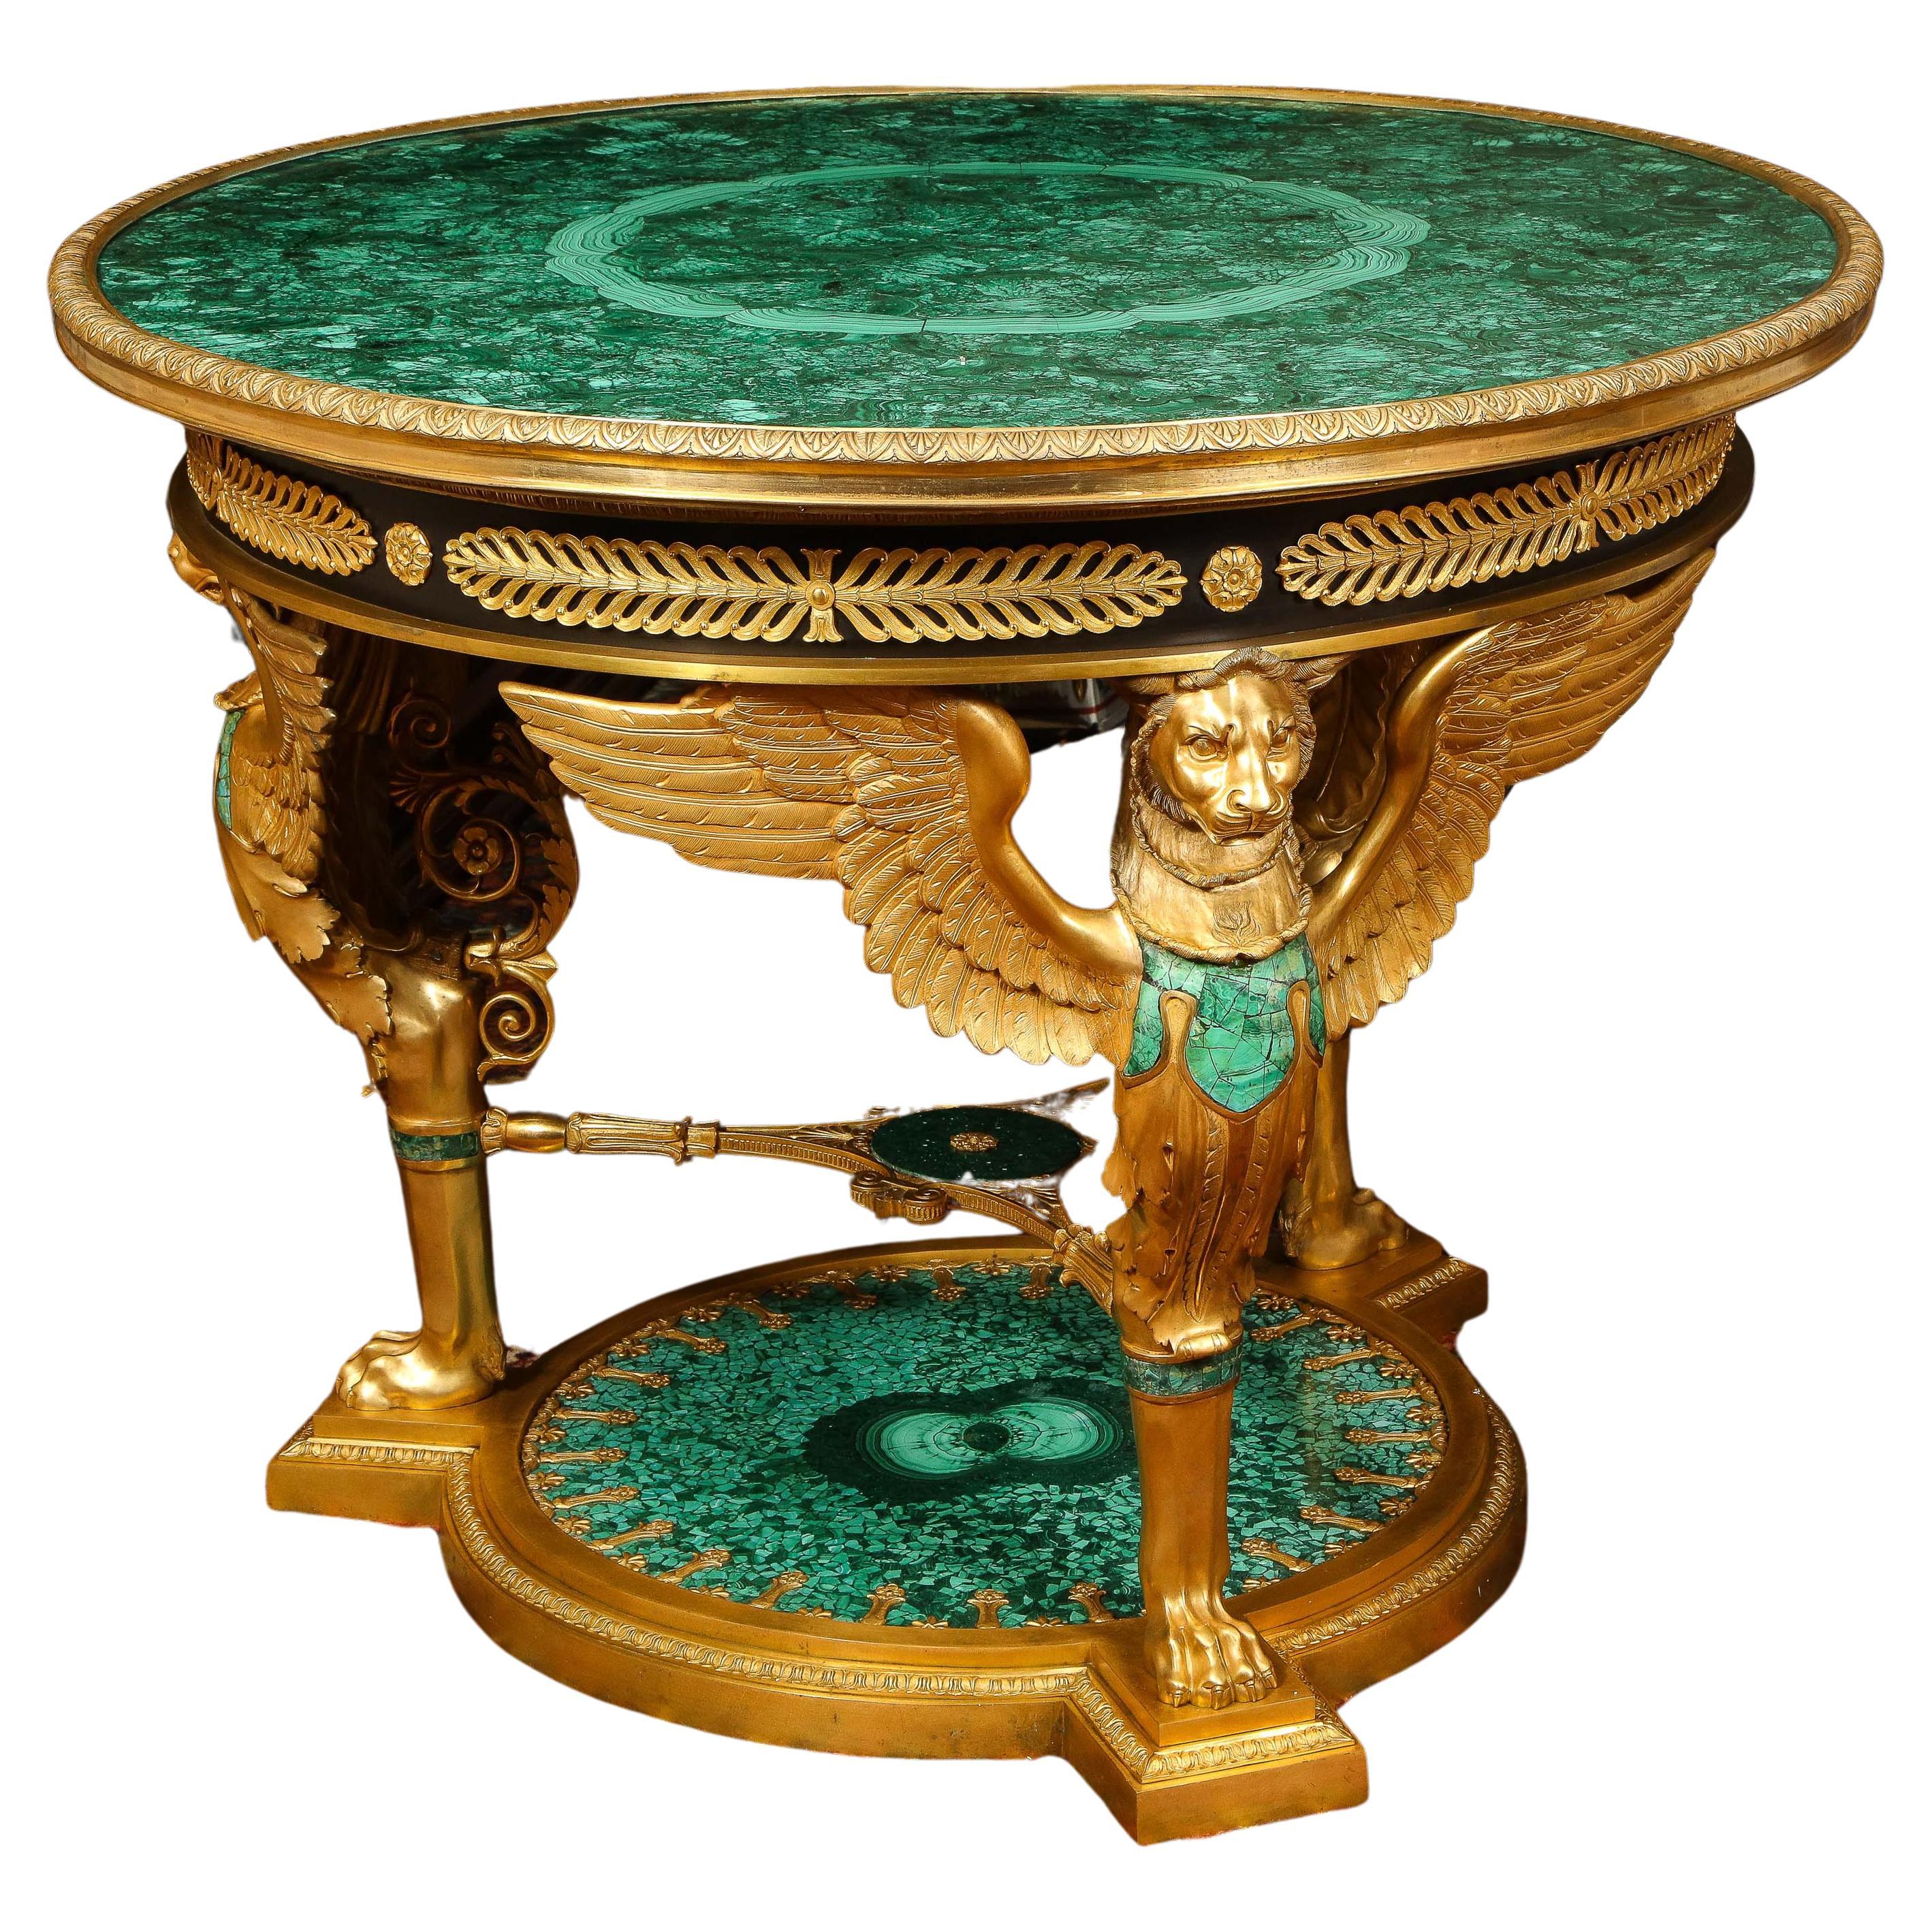 Ein beeindruckender und beeindruckender Mitteltisch im Empire-Stil aus Goldbronze und Malachit